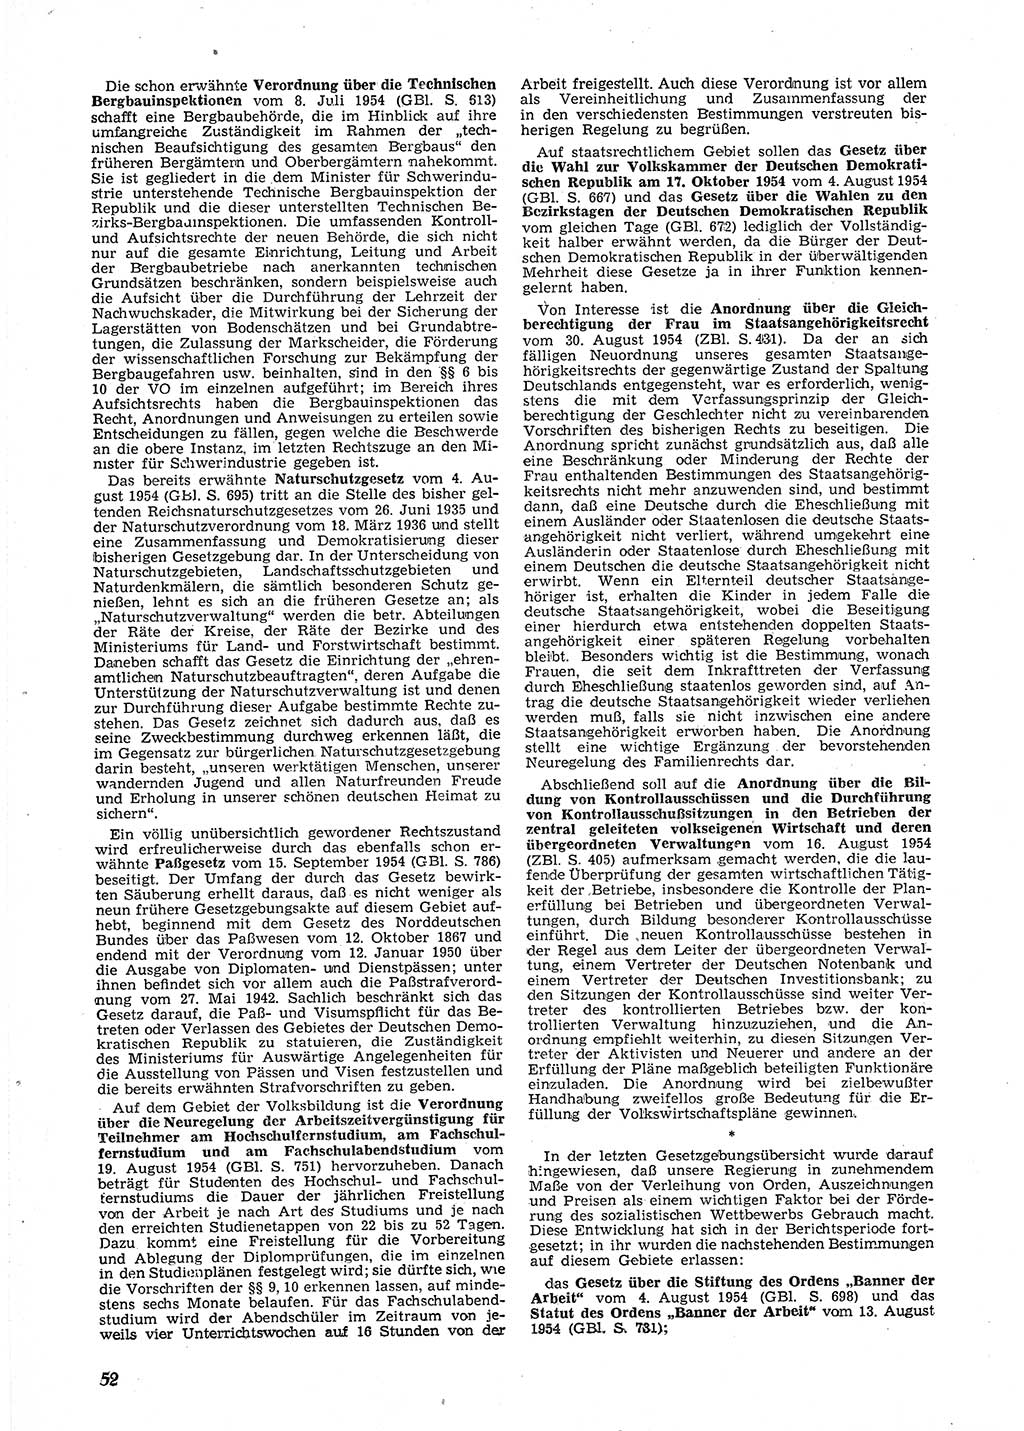 Neue Justiz (NJ), Zeitschrift für Recht und Rechtswissenschaft [Deutsche Demokratische Republik (DDR)], 9. Jahrgang 1955, Seite 52 (NJ DDR 1955, S. 52)